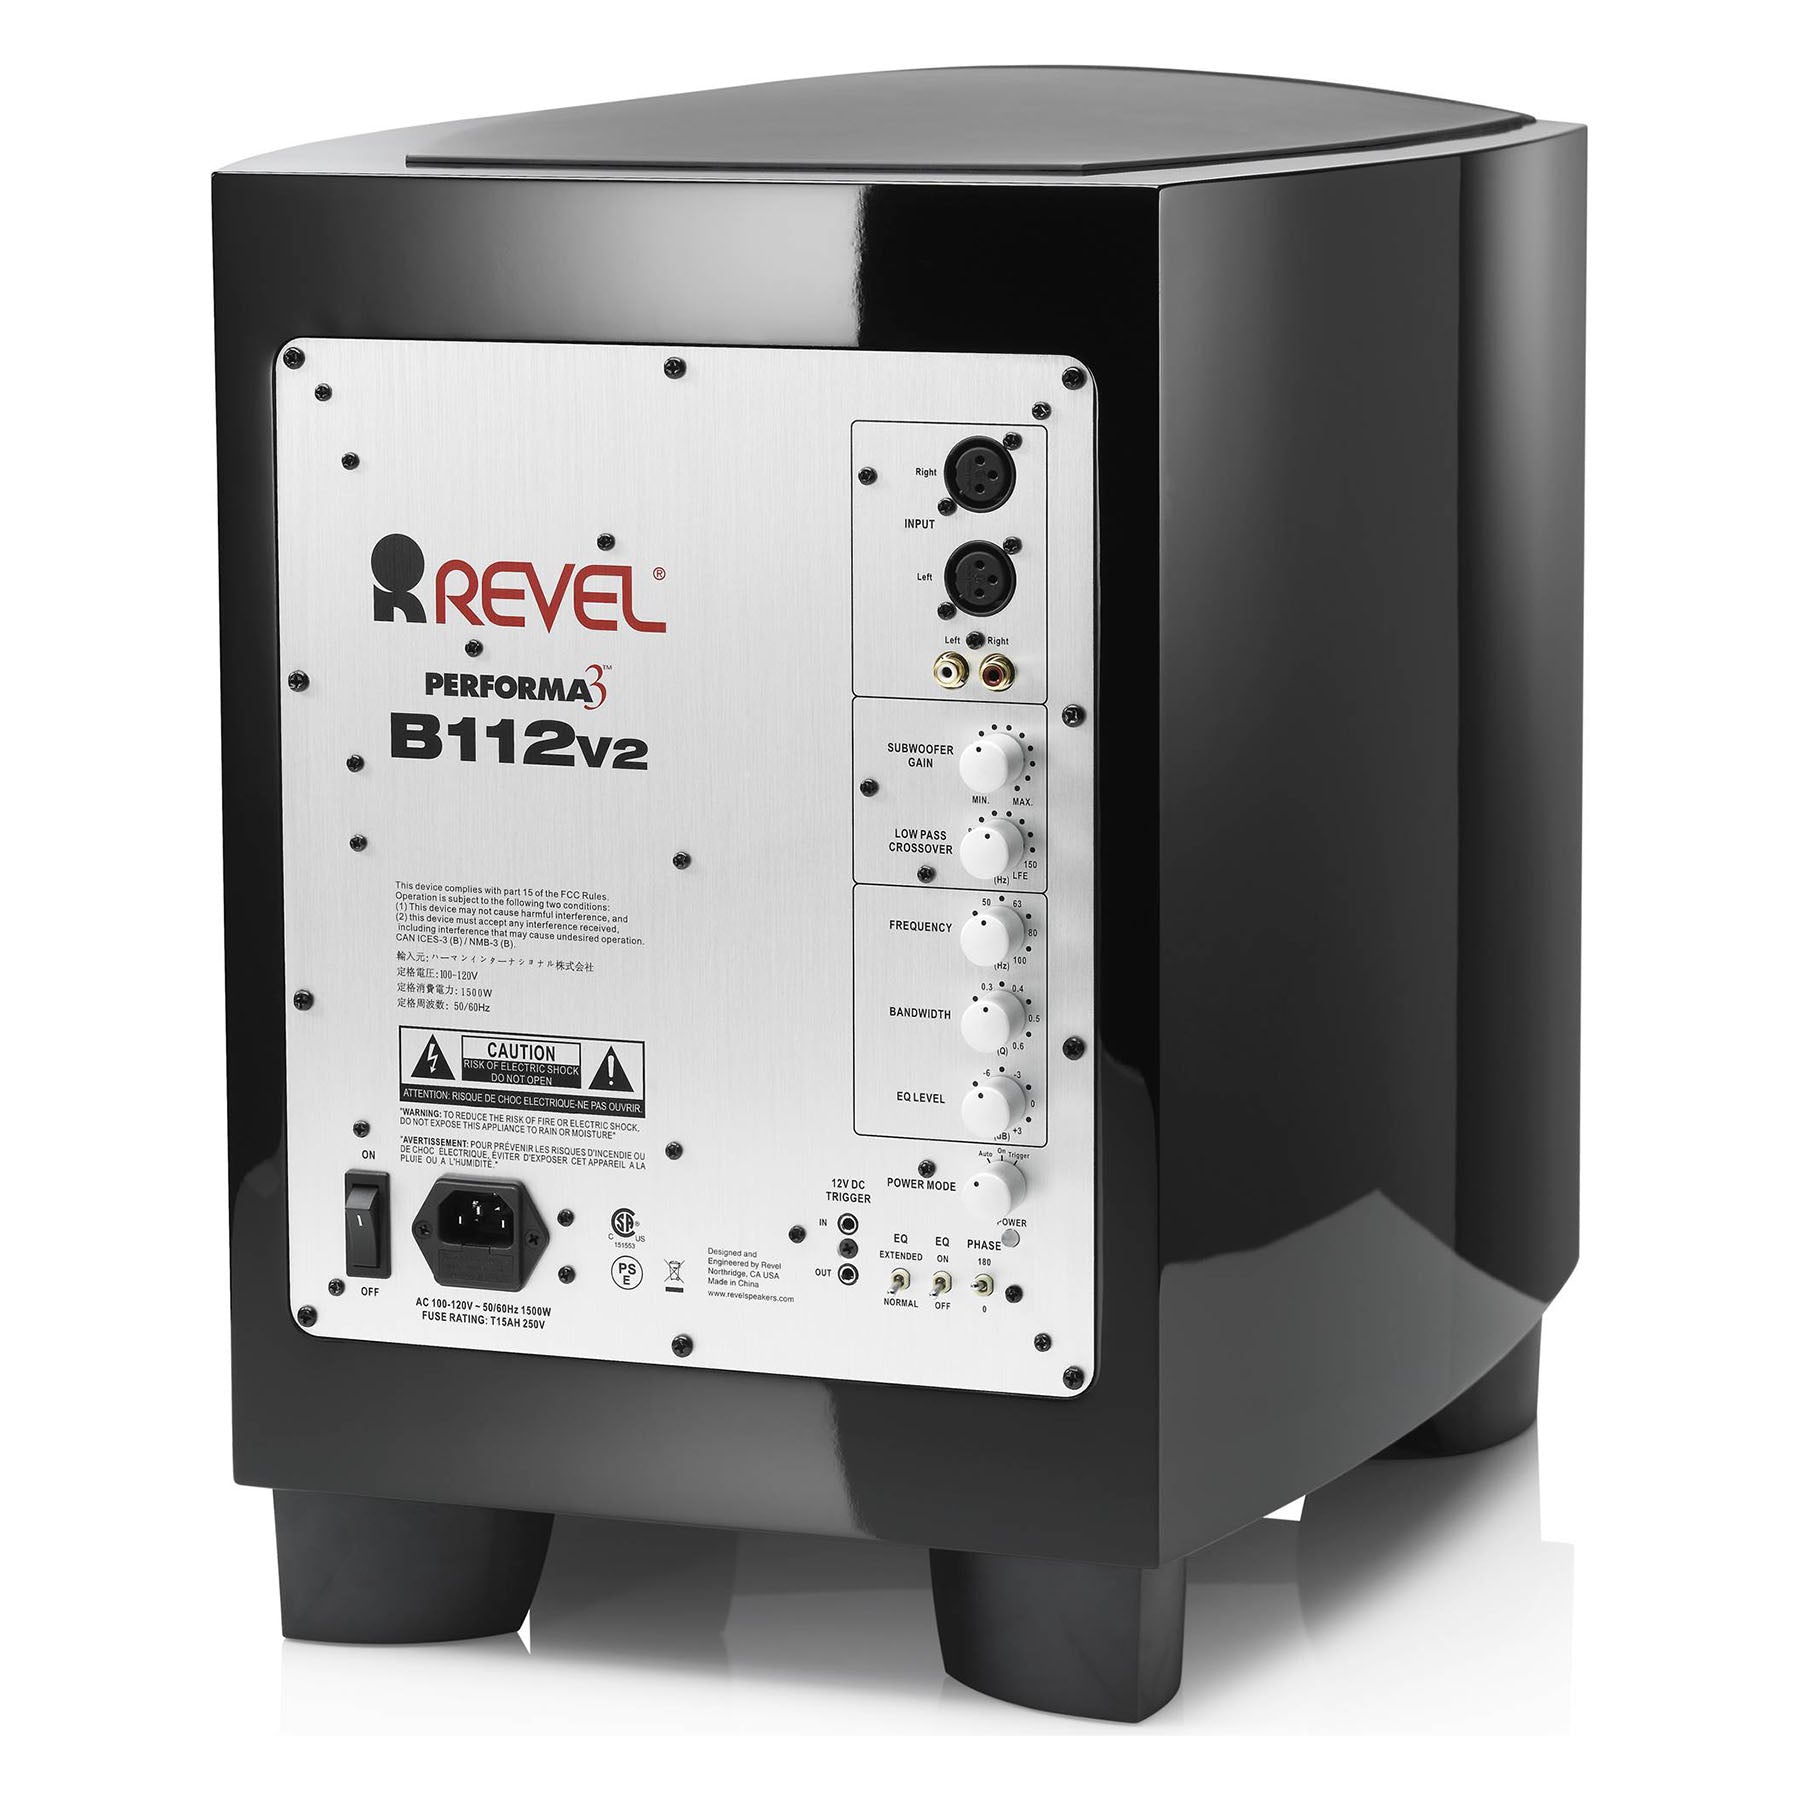 Revel B112v2 12” 1000W Powered Subwoofer